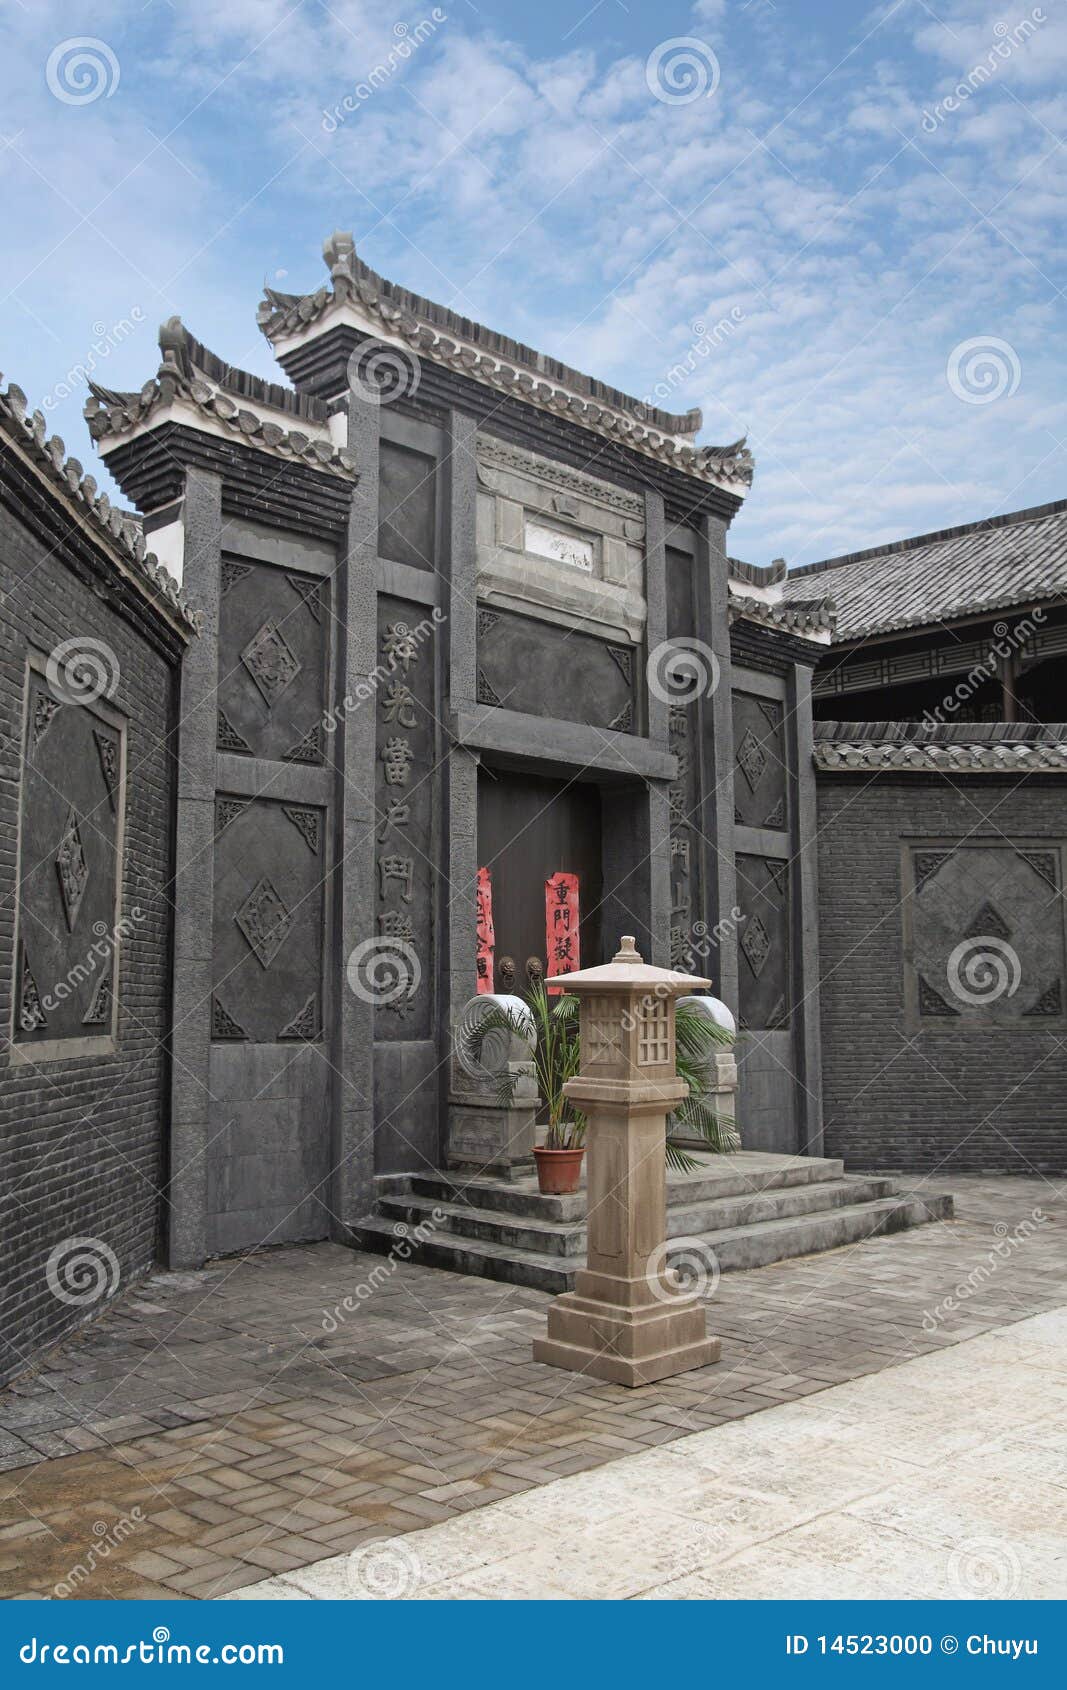 photo stock vieille maison chinoise image